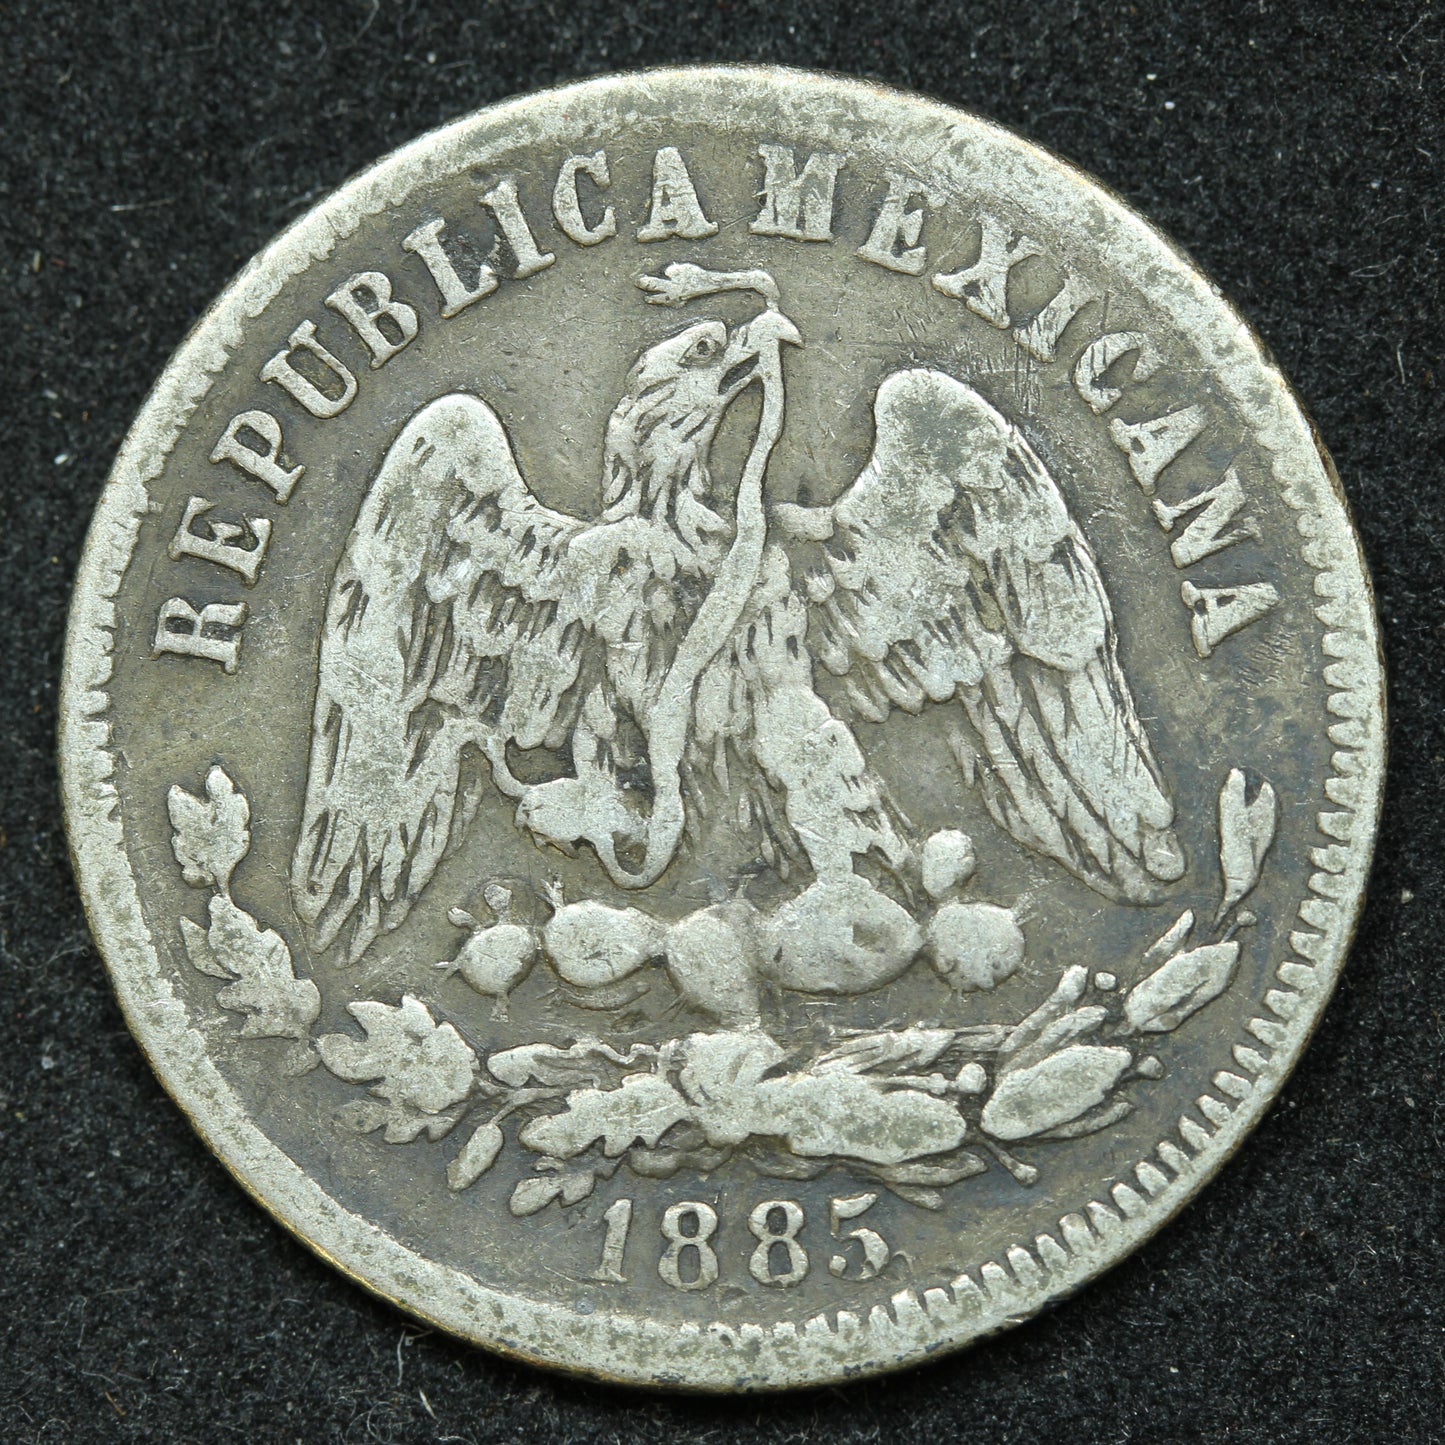 1885 25 Centavos Zs S Mexico Silver Coin - KM# 406.9